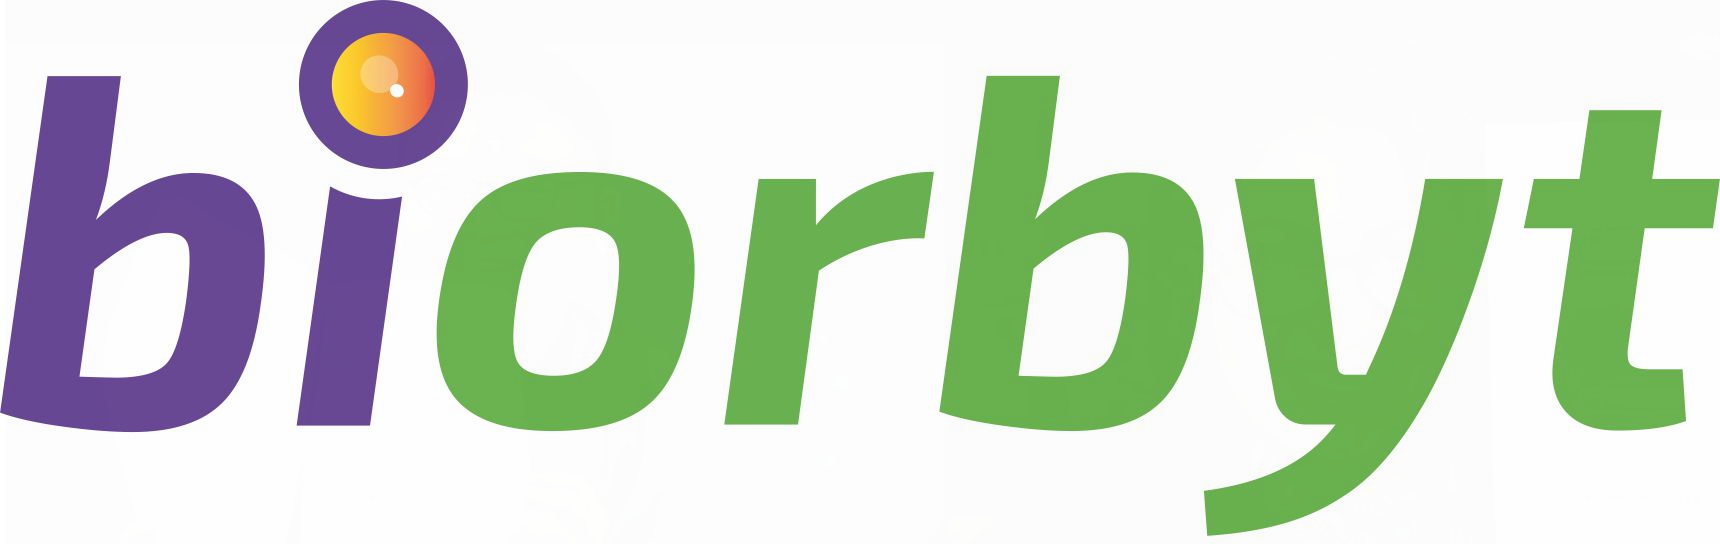 biorbyt-high-res-logo-no-strapline